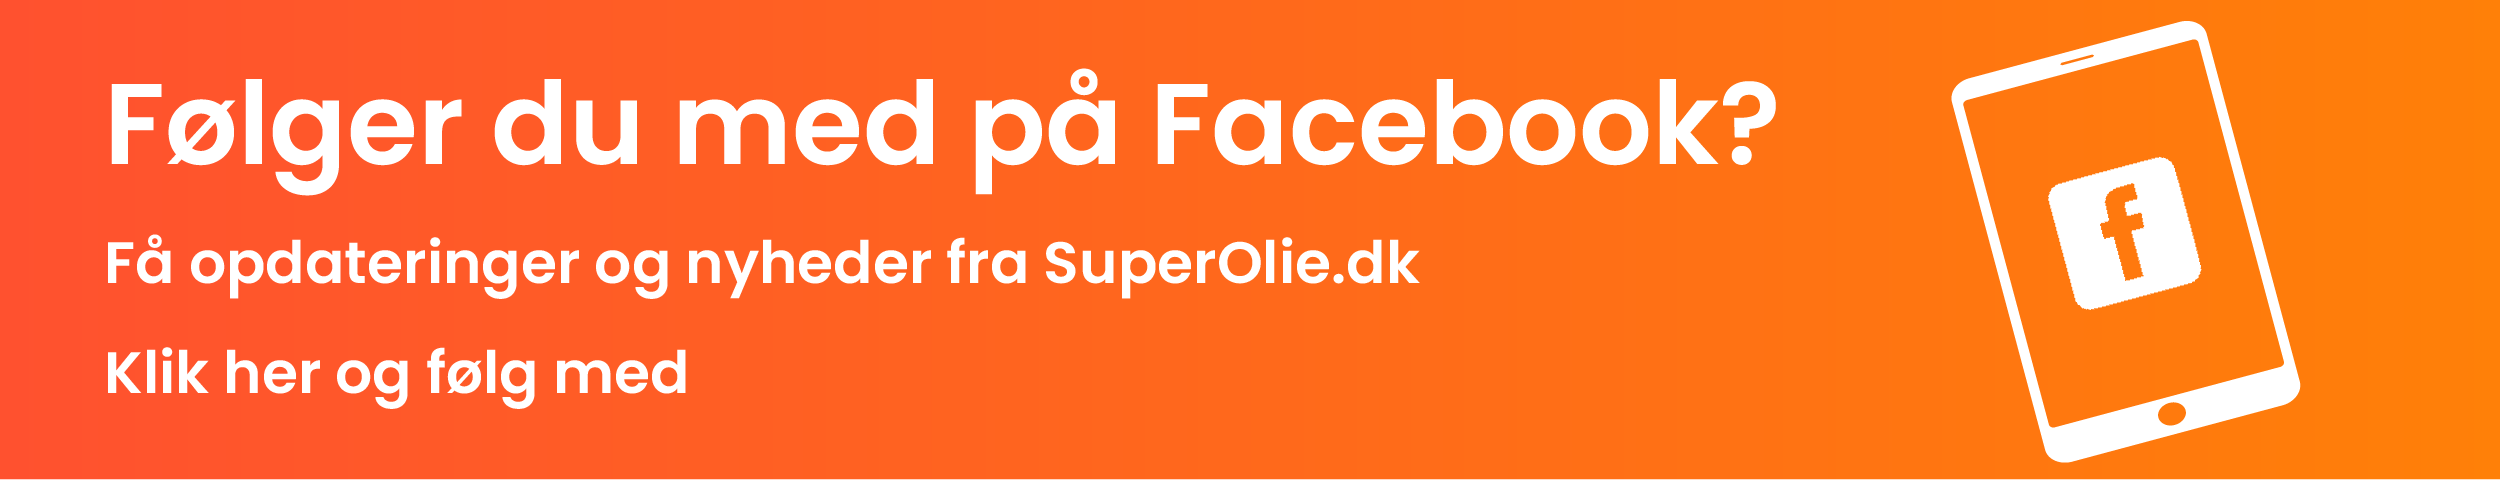 SuperOlie - Følger du med på Facebook?